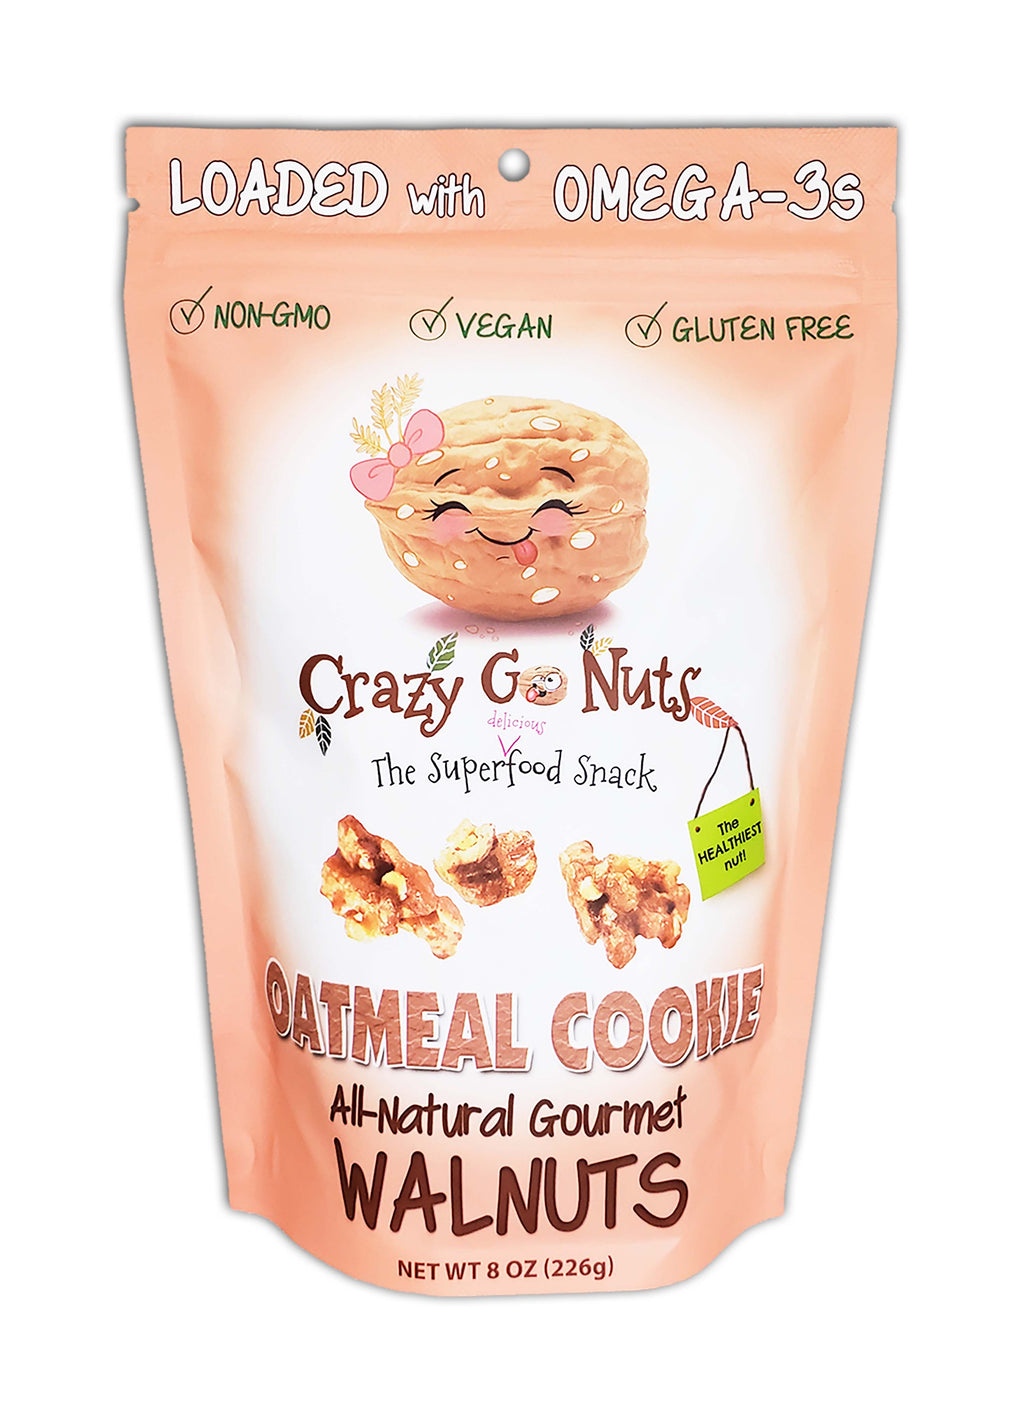 A bag of oatmeal cookie coated walnut snacks